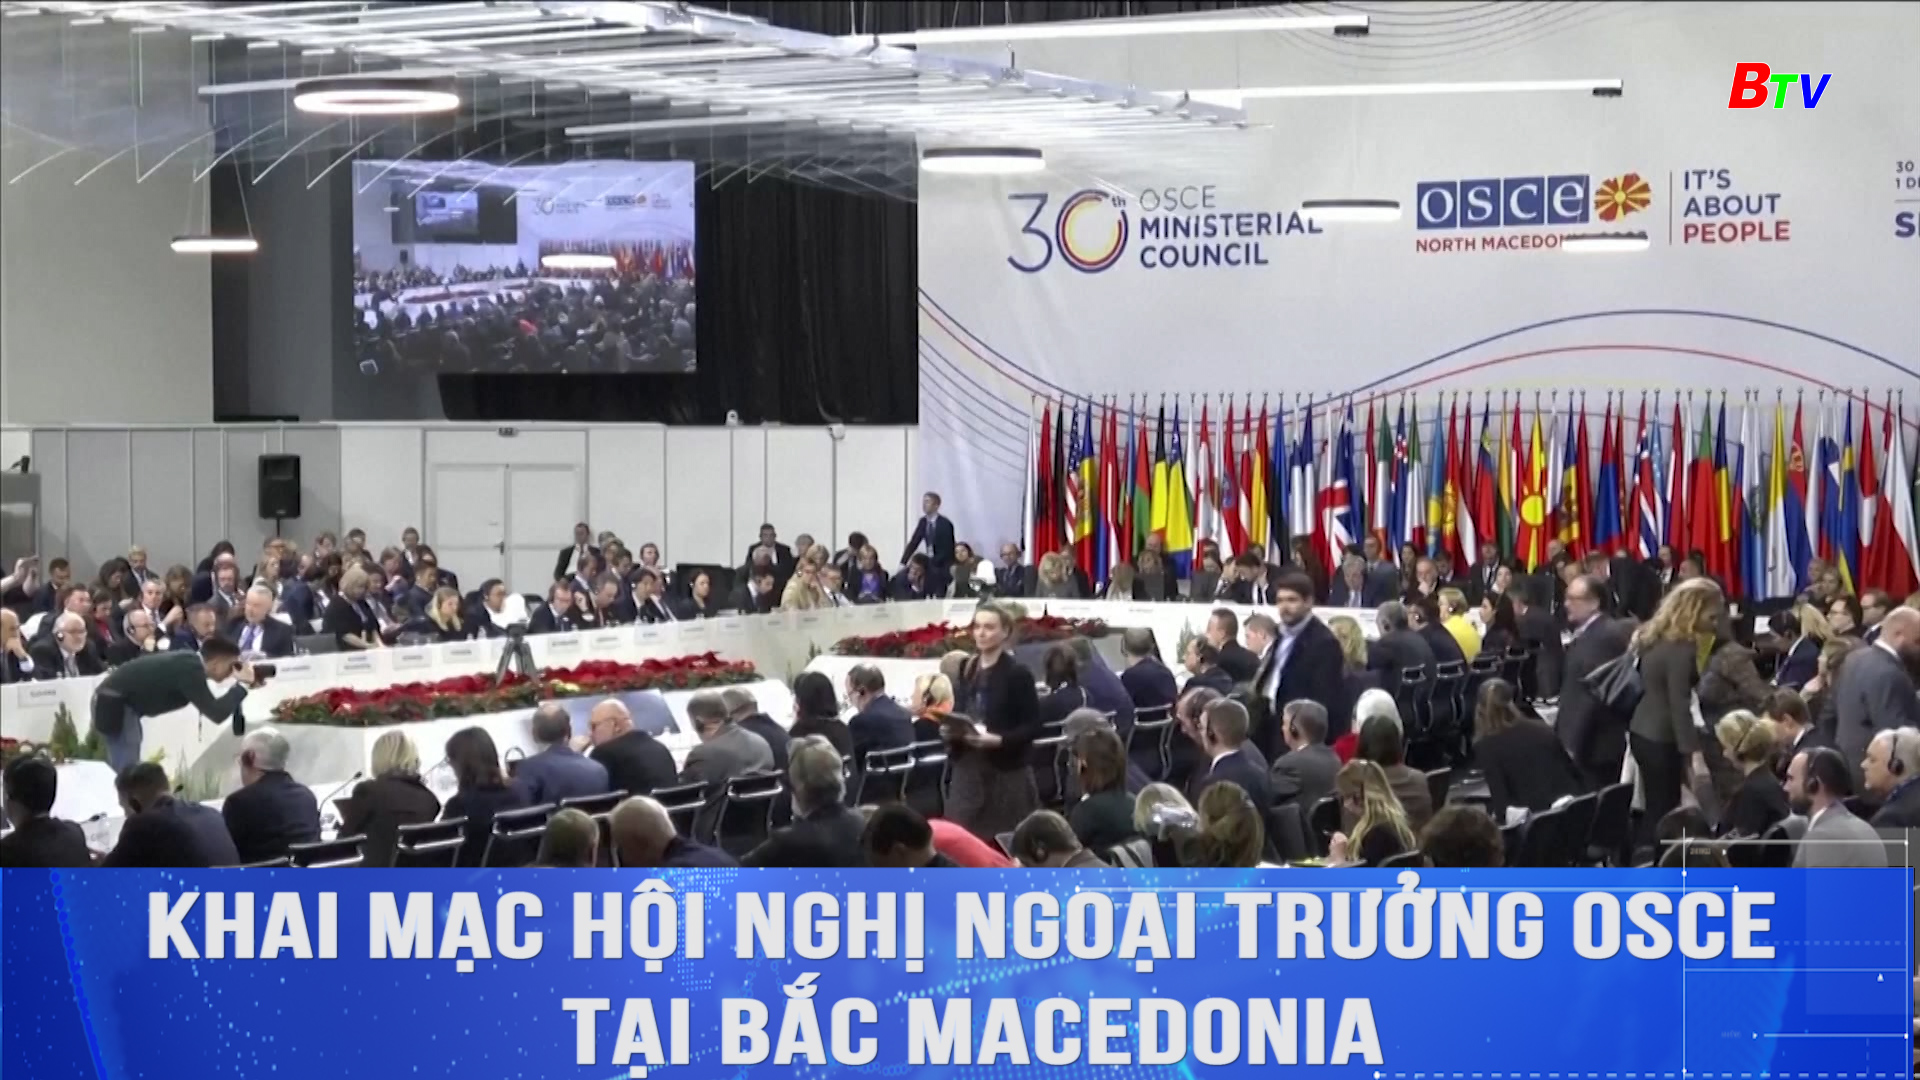 Khai mạc hội nghị ngoại trưởng OSCE tại Bắc Macedonia